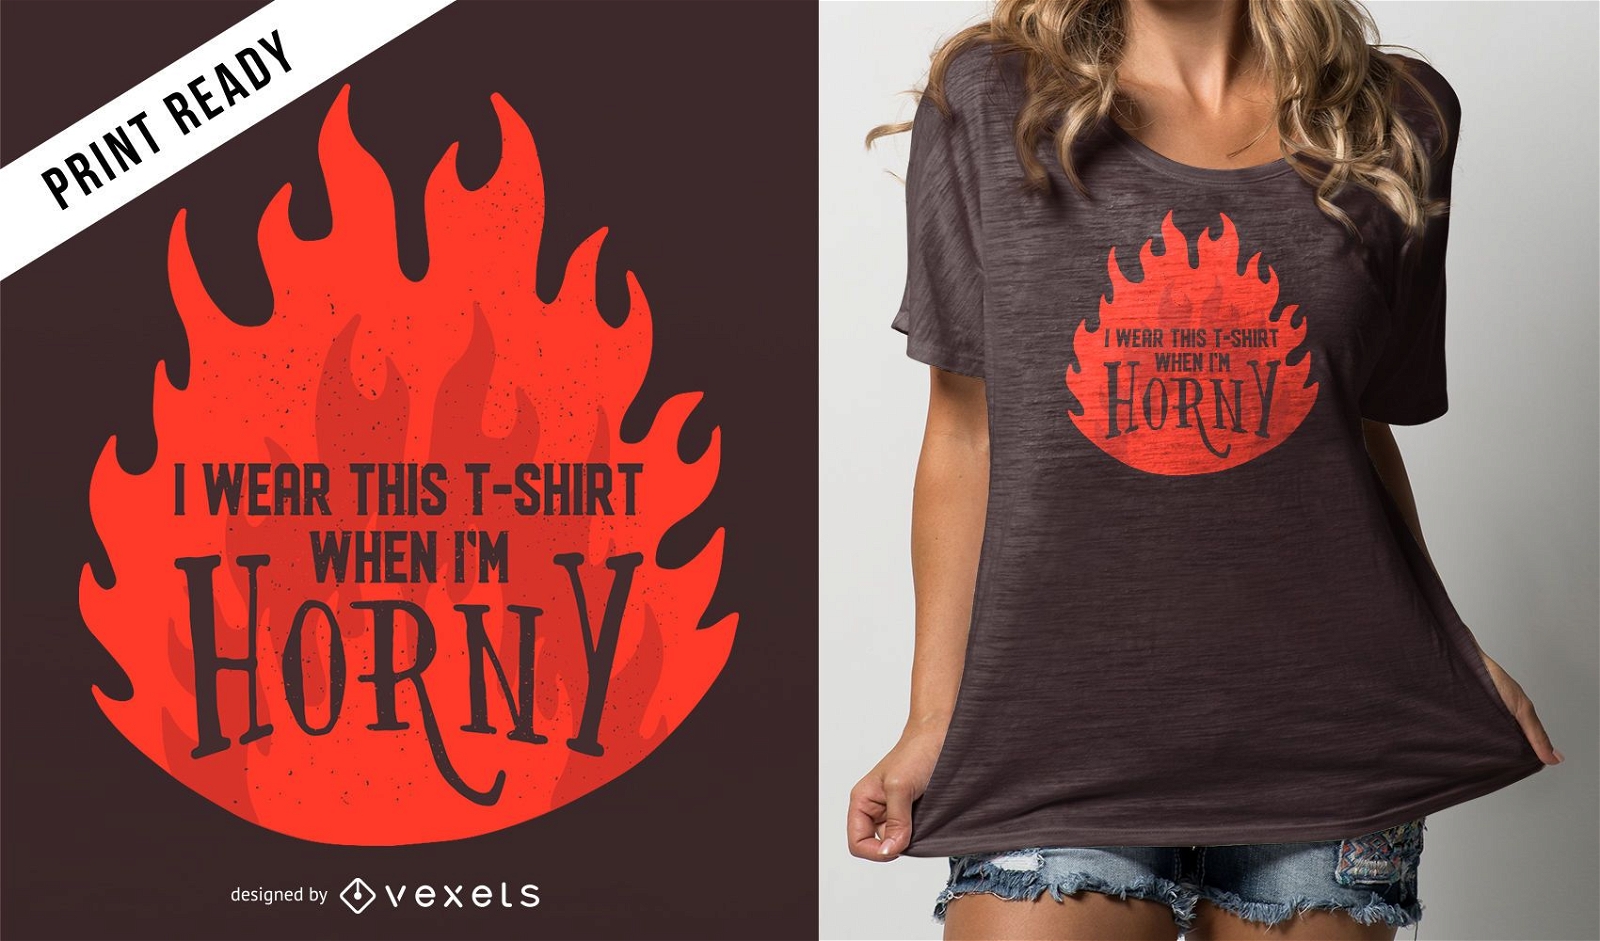 Horny t-shirt design